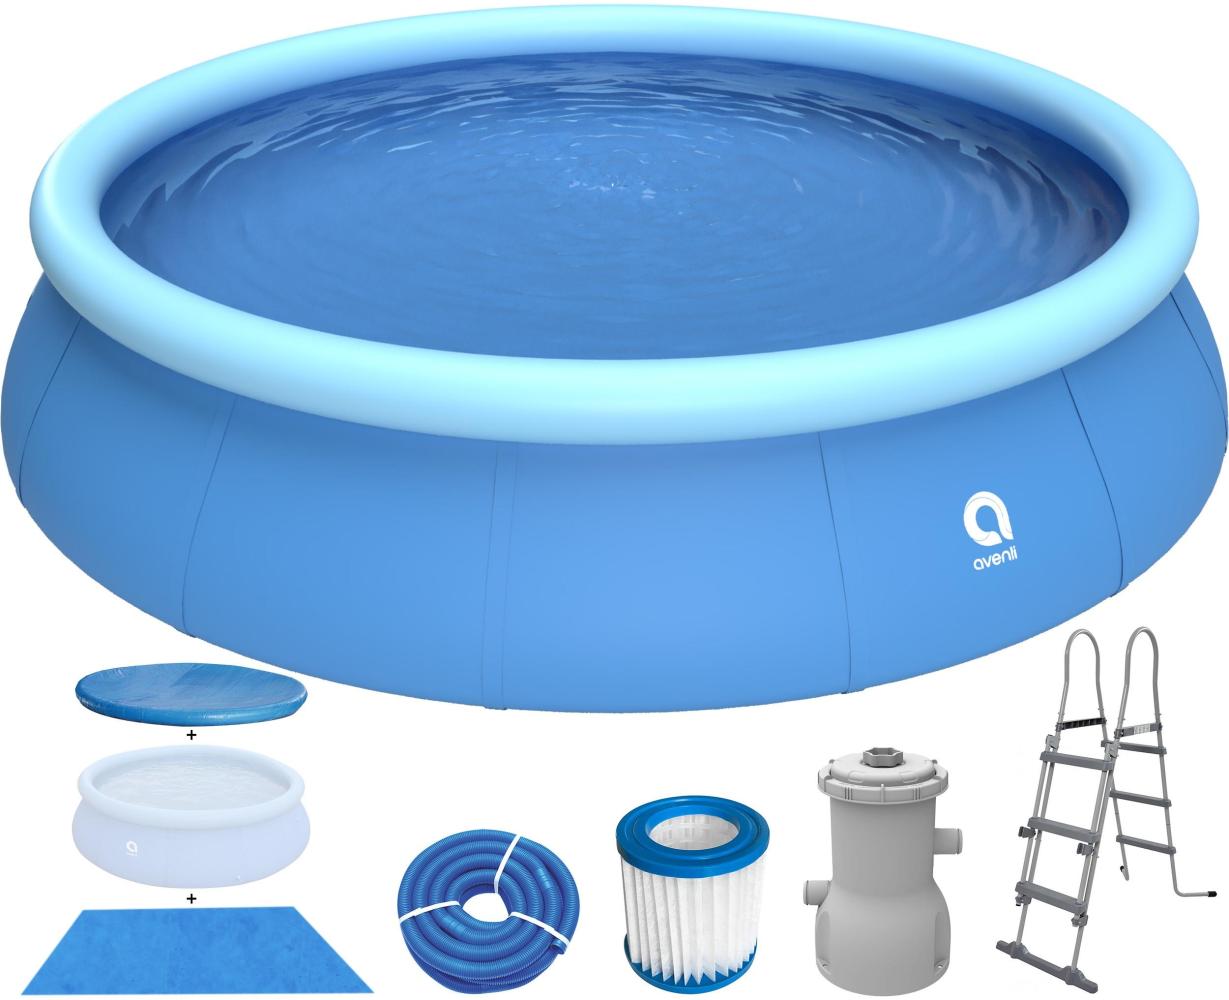 Avenli® Prompt Set™ Pool Komplettset Ø 450 x 90 cm mit Filterpumpe, Leiter, Bodenschutz und Abdeckung, blau Bild 1